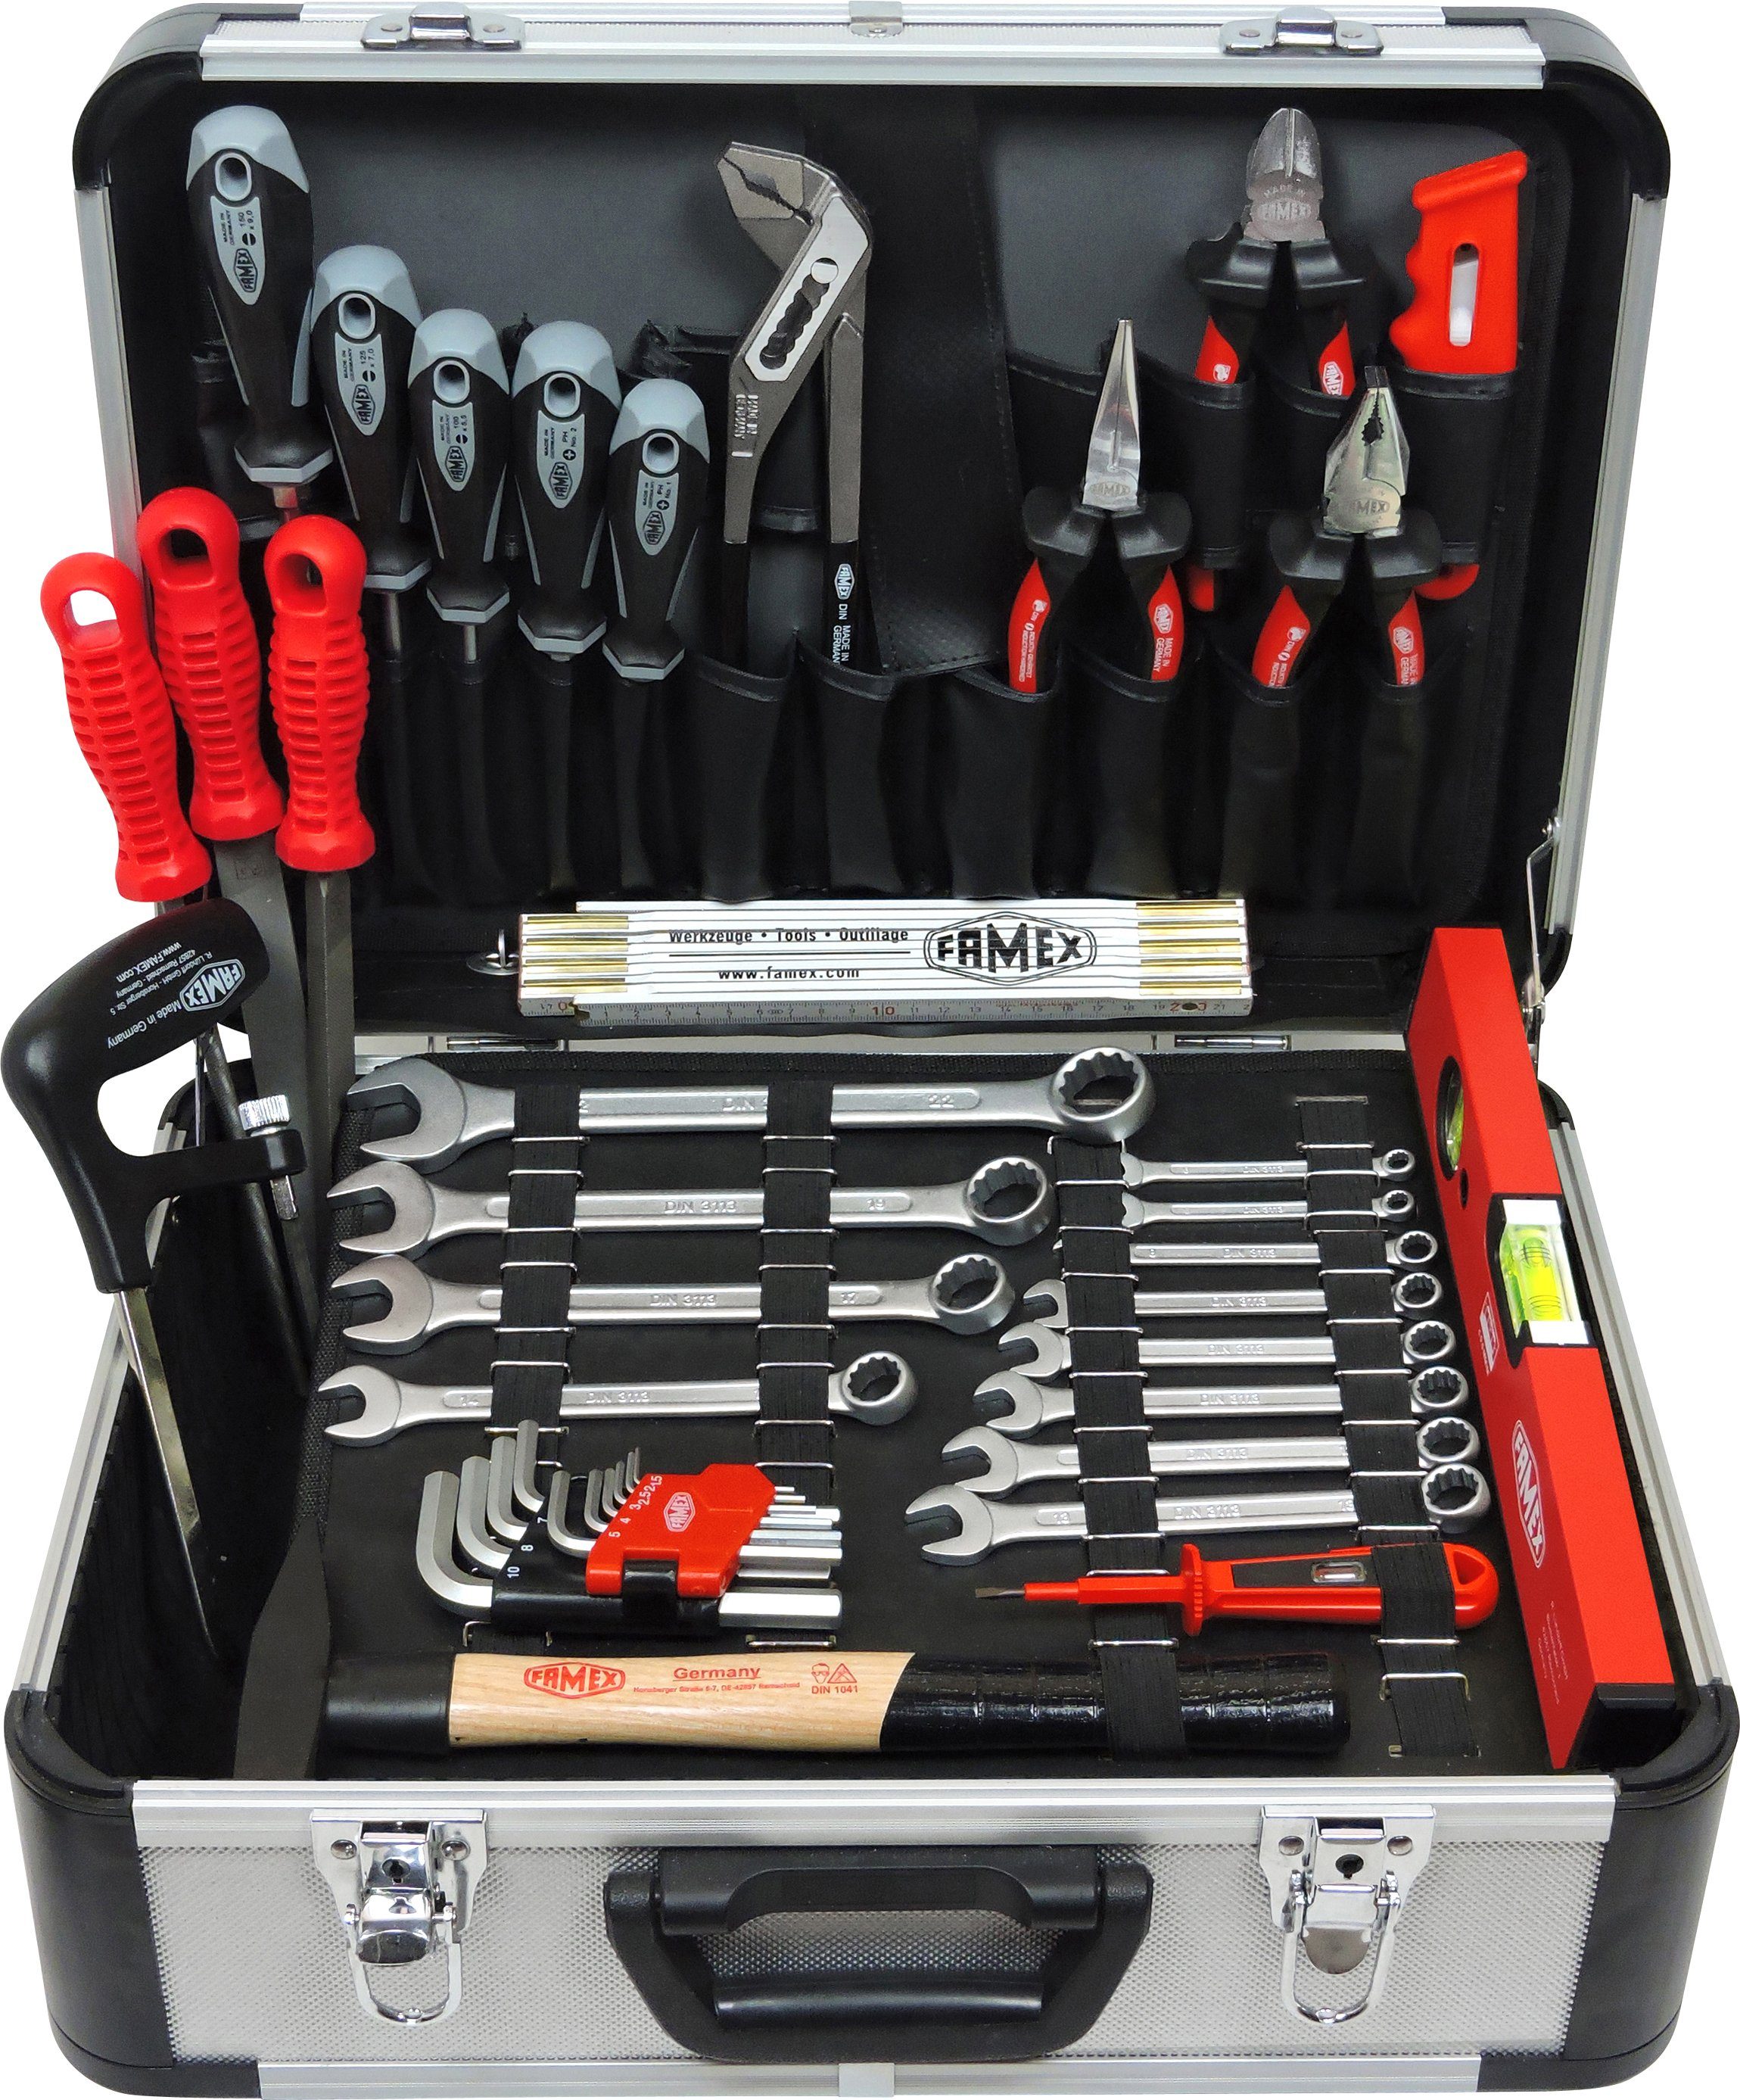 FAMEX Werkzeugset »729-88 Profi Alu Werkzeugkoffer mit Werkzeug Set -  Werkzeugkiste gefüllt - viele Werkzeuge aus deutscher Produktion«, ( Werkzeugkoffer), TOP-Qualität online kaufen | OTTO